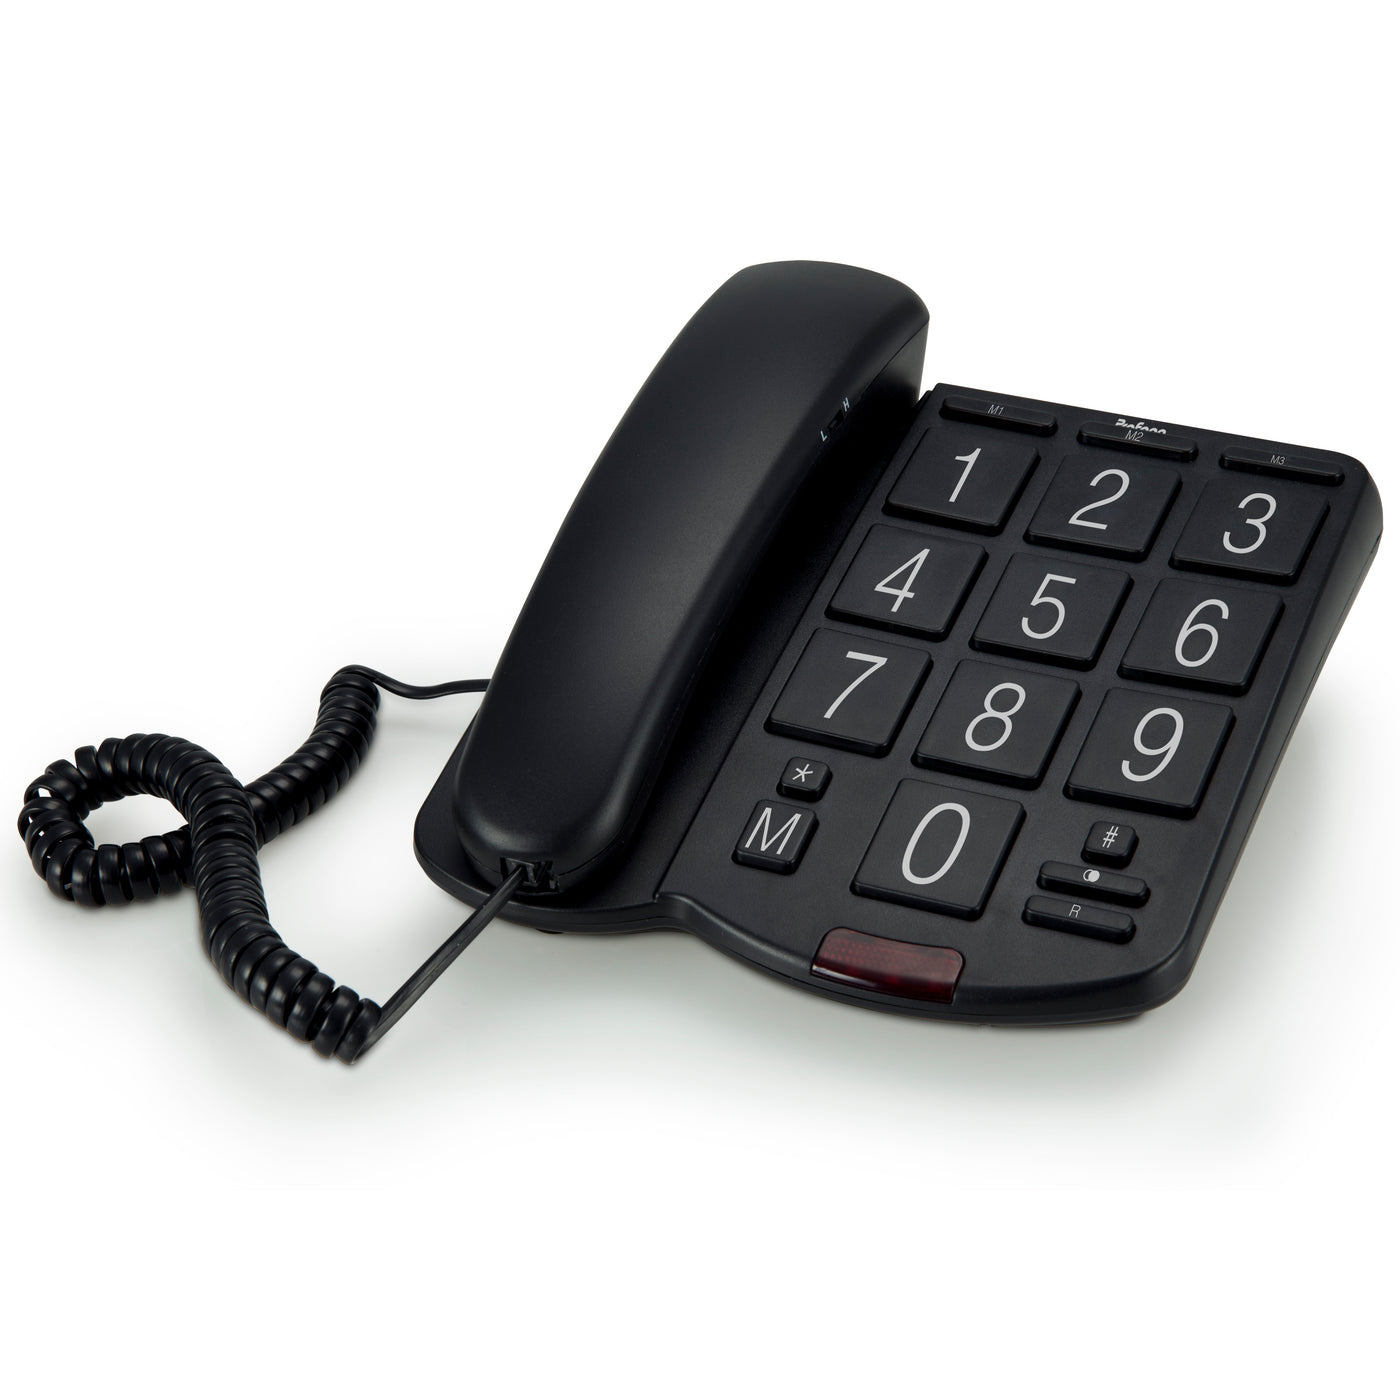 Profoon TX-575 - Vaste telefoon met grote toetsen, zwart